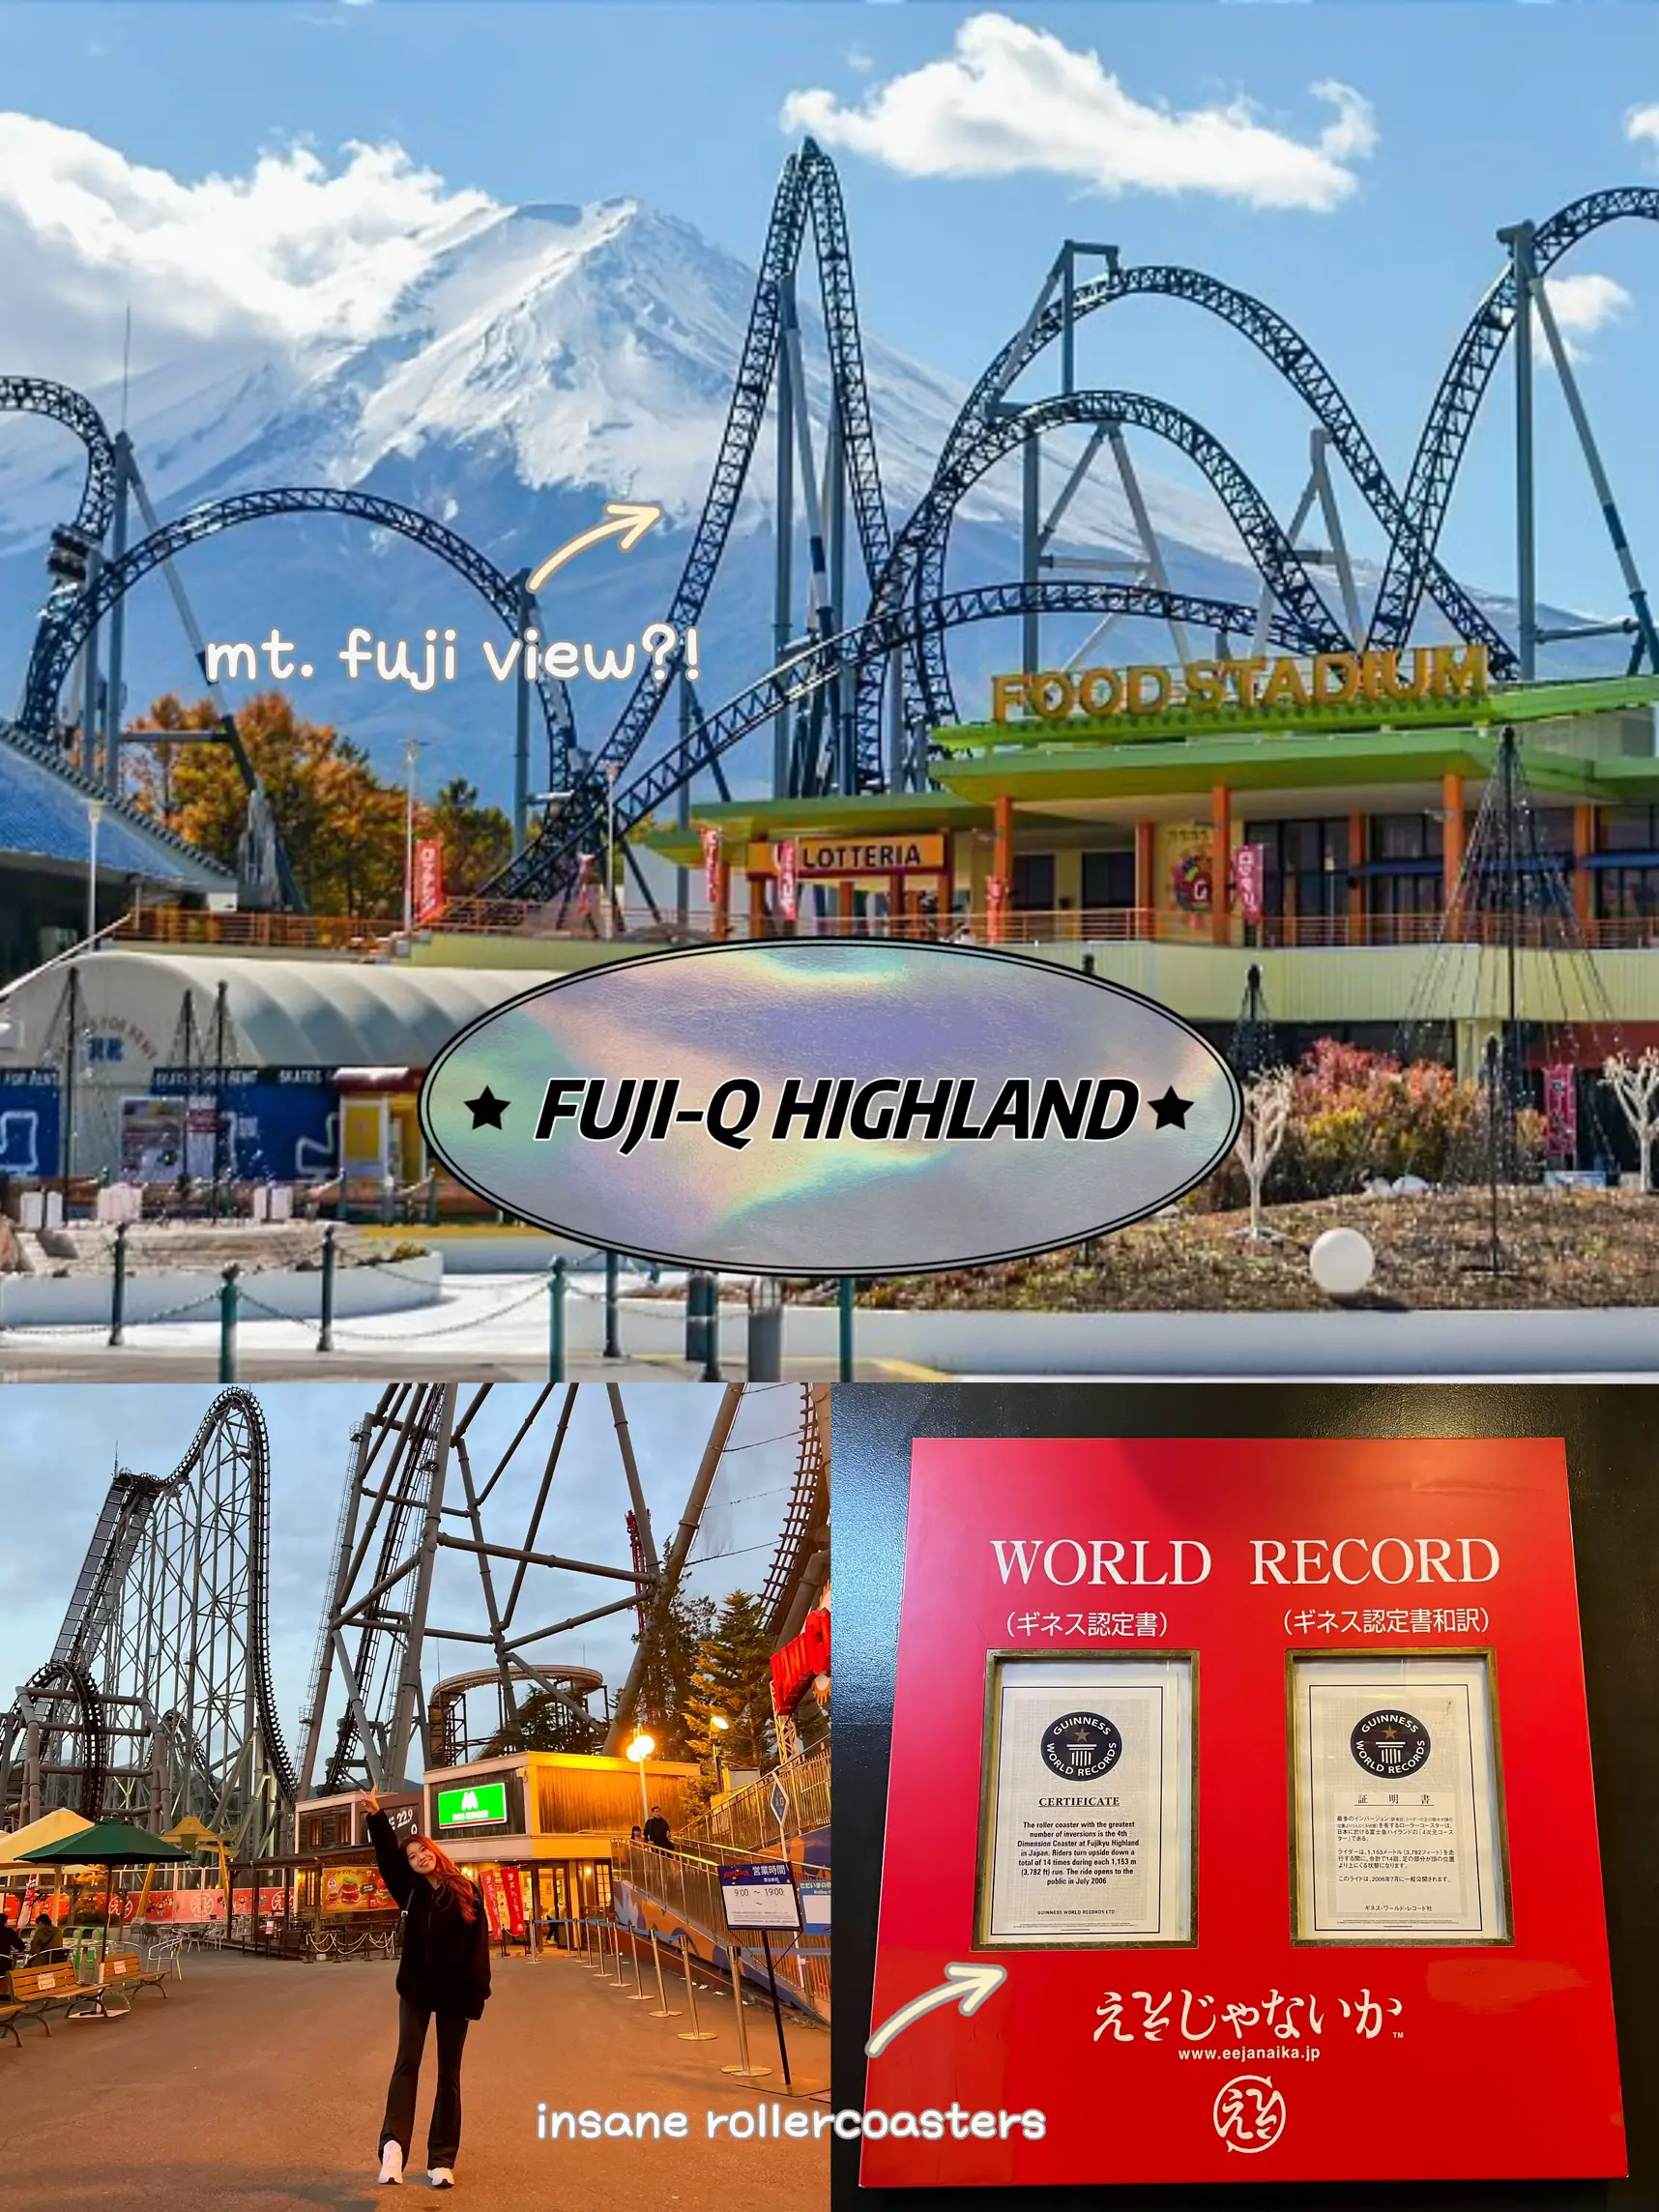 Fuji-Q Highland